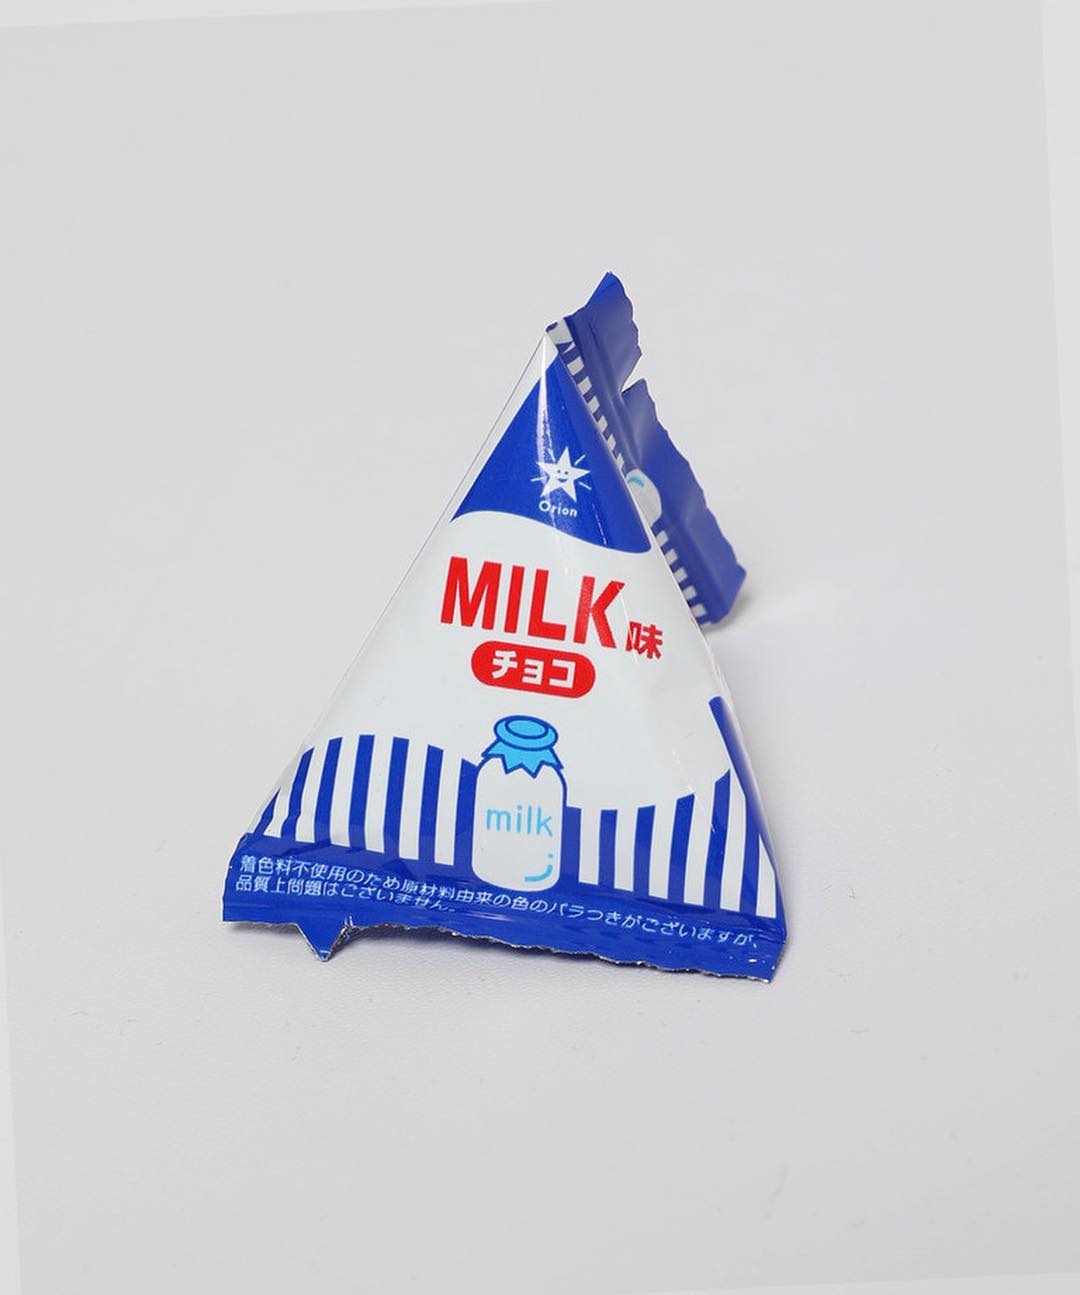 蓝白色的牛奶瓶搭配三角形的糖纸,不知道这款牛奶巧克力口味是否纯正